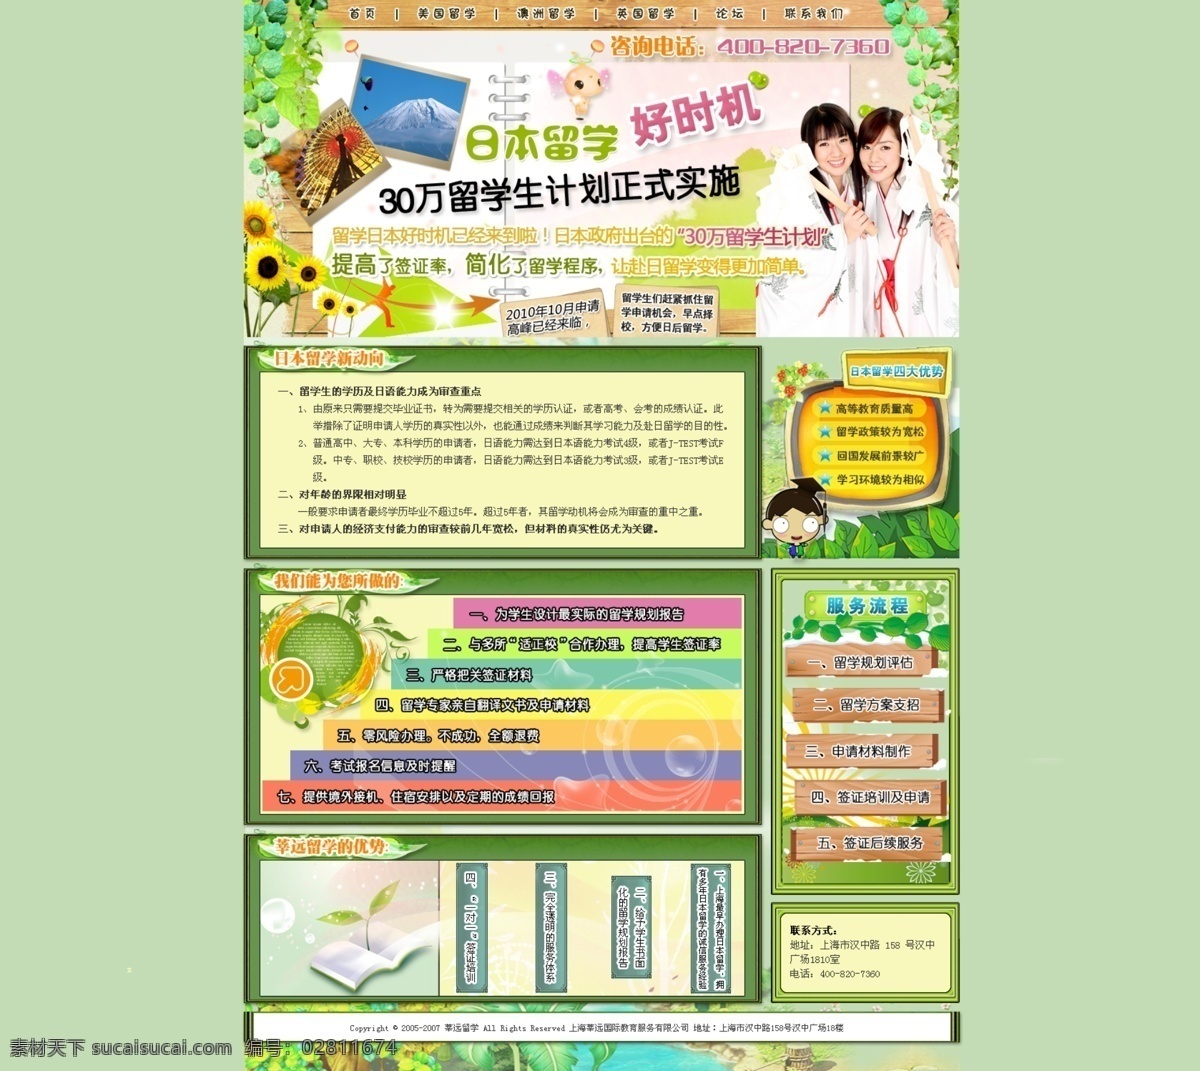 和服 留学 绿色 木板 日本 网页模板 源文件 中文模板 日本留学 网页 专题 模板下载 网页素材